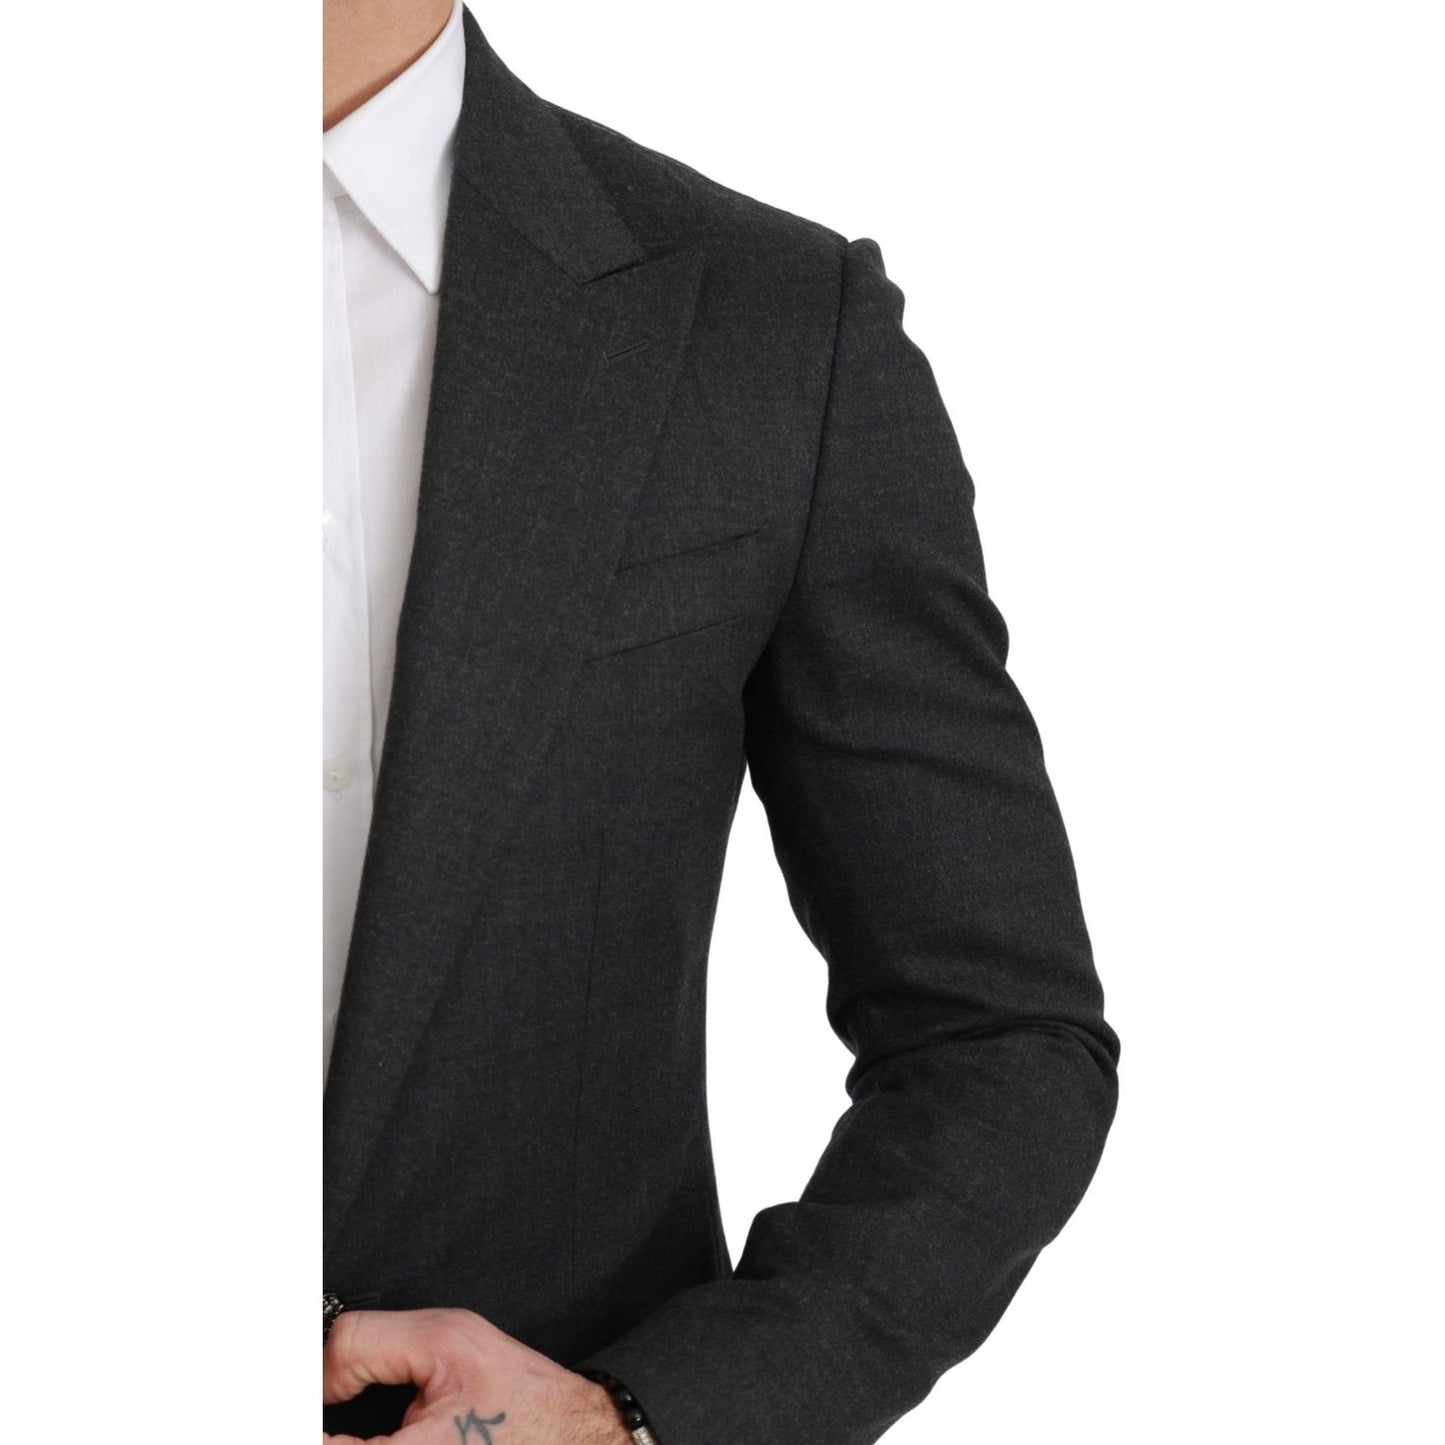 Dolce & Gabbana Elegant Gray Slim Fit Formal Blazer gray-napoli-slim-fit-jacket-wool-blazer IMG_2690-scaled-1dd7777c-732.jpg